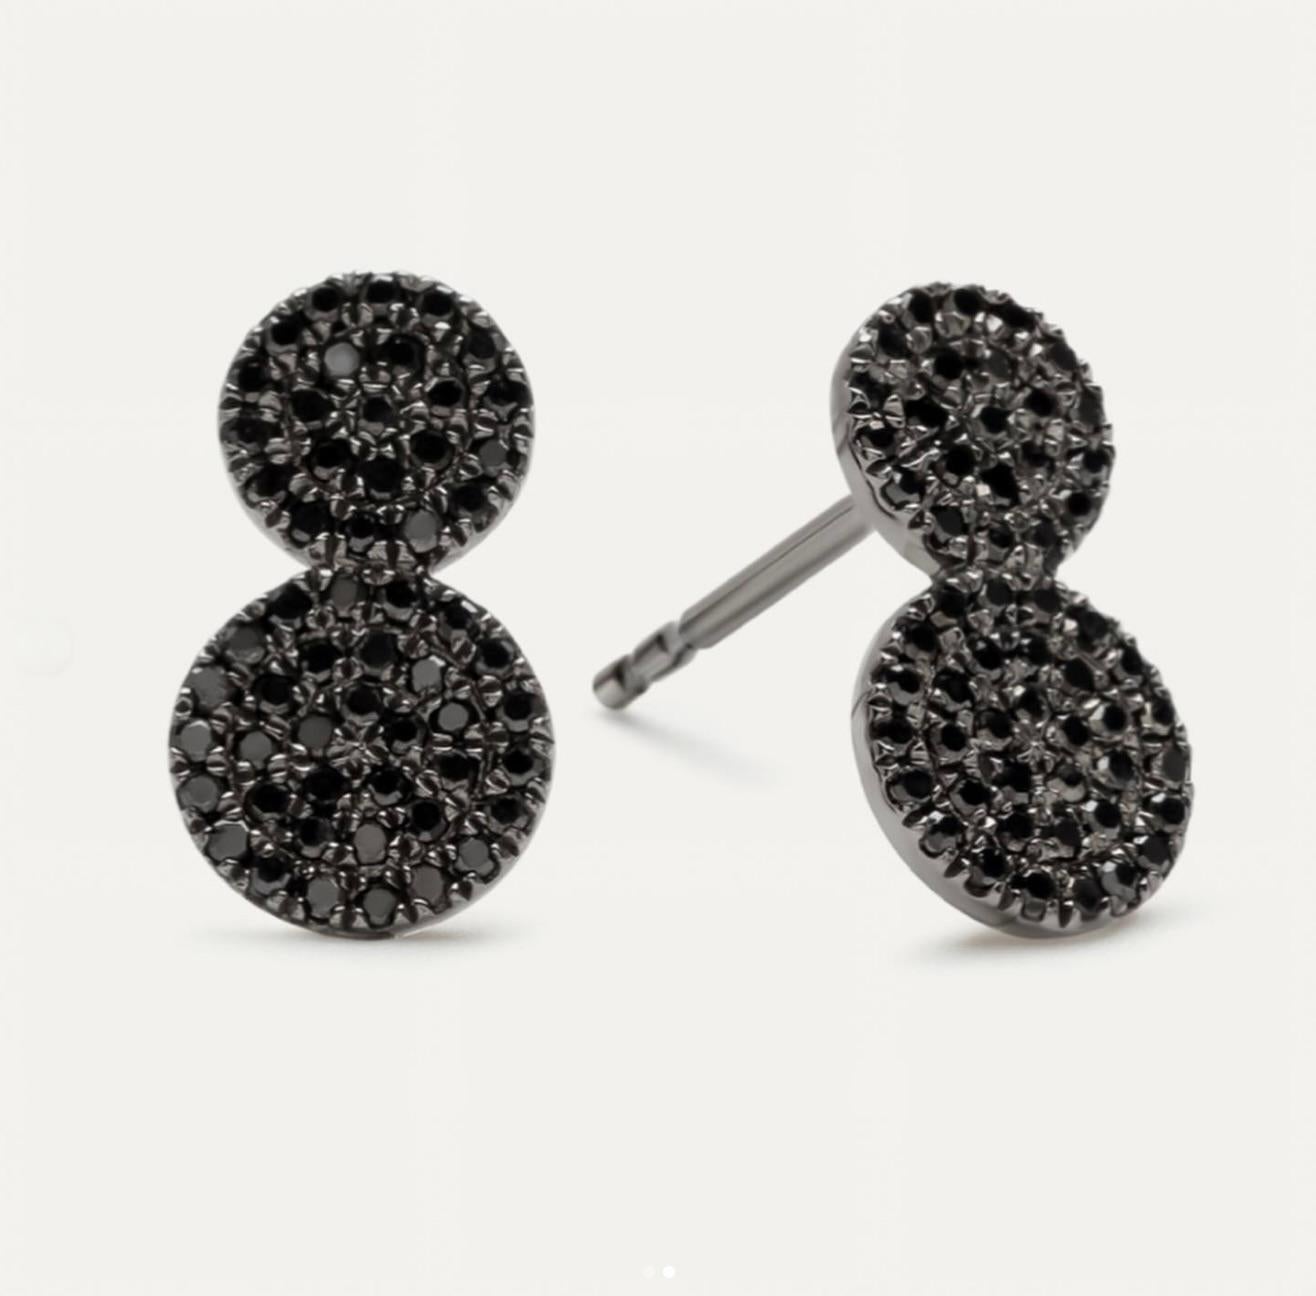 Die schwarzen Diamantohrstecker sind ein fesselnder und zeitgemäßer Ausdruck von Eleganz und Individualität. Diese exquisiten Ohrringe sind mit glänzenden schwarzen Diamanten besetzt, die in zwei kreisförmigen Scheiben gefasst sind. Sie bilden einen